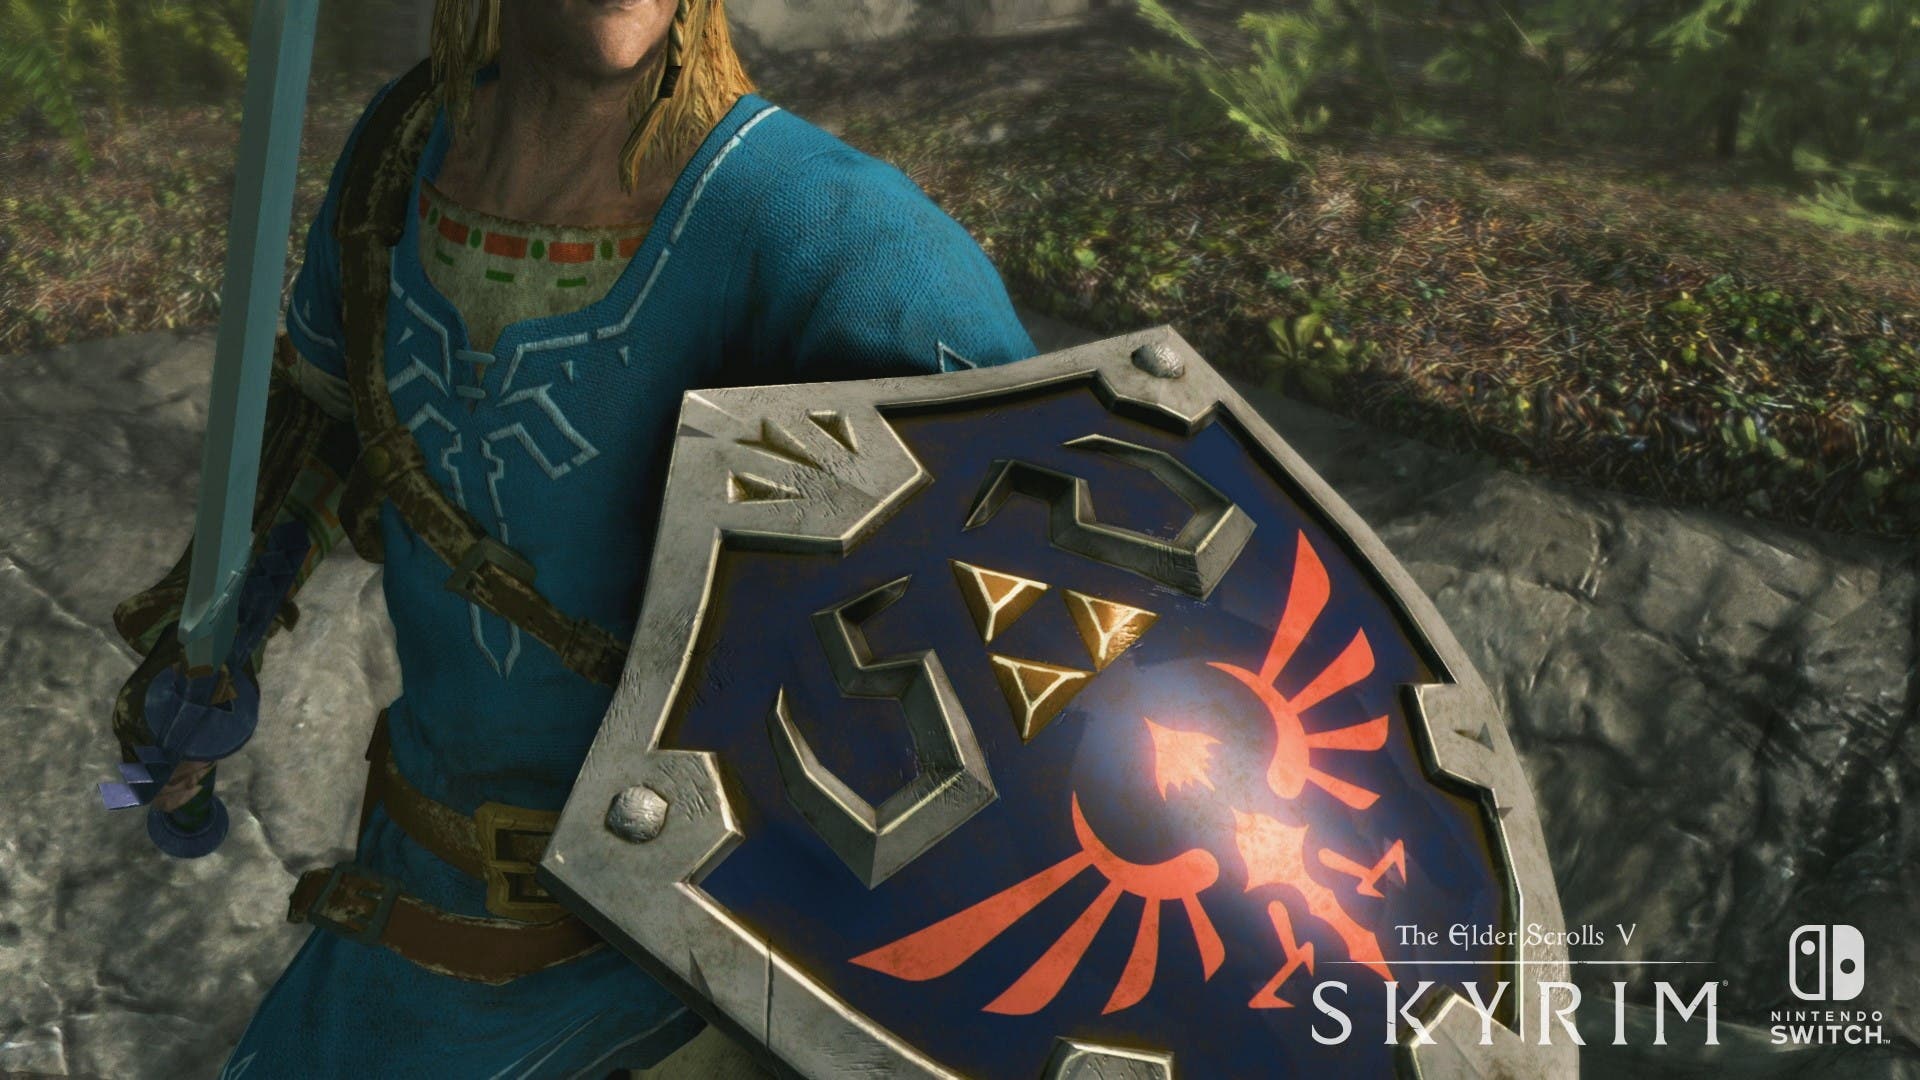 Iron Galaxy ha colaborado en el proceso de desarrollo de The Elder Scrolls V: Skyrim para Nintendo Switch